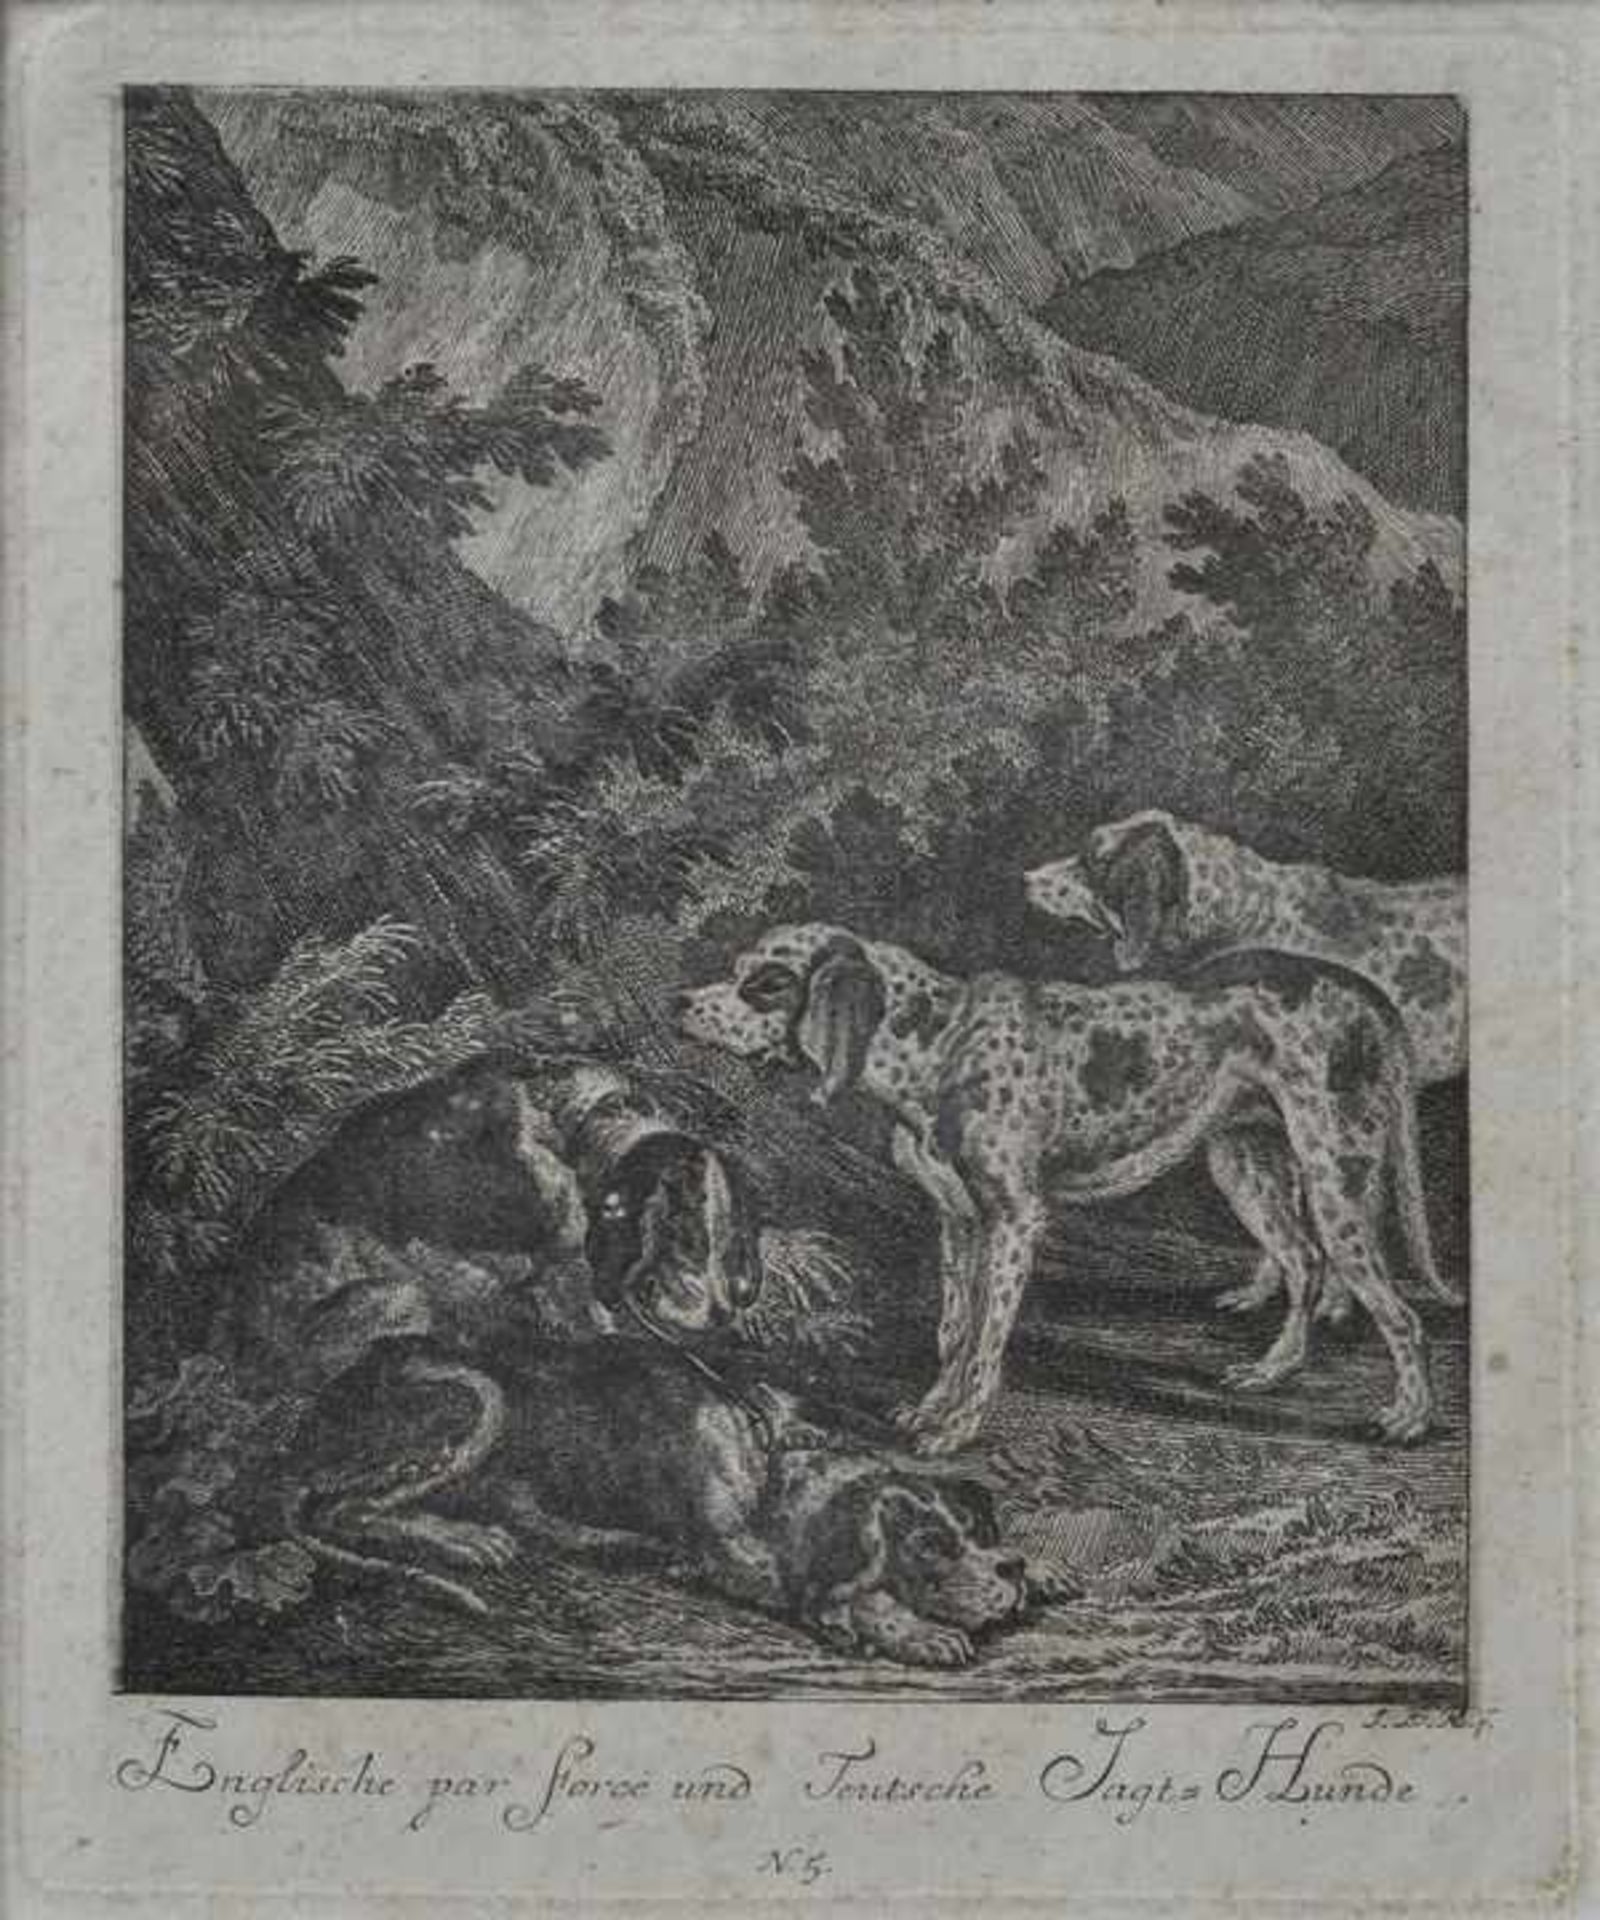 Ridinger, Johann Elias. 1698 Ulm-1767 Augsburg "Englische par force und Teutsche Jagt-Hunde".